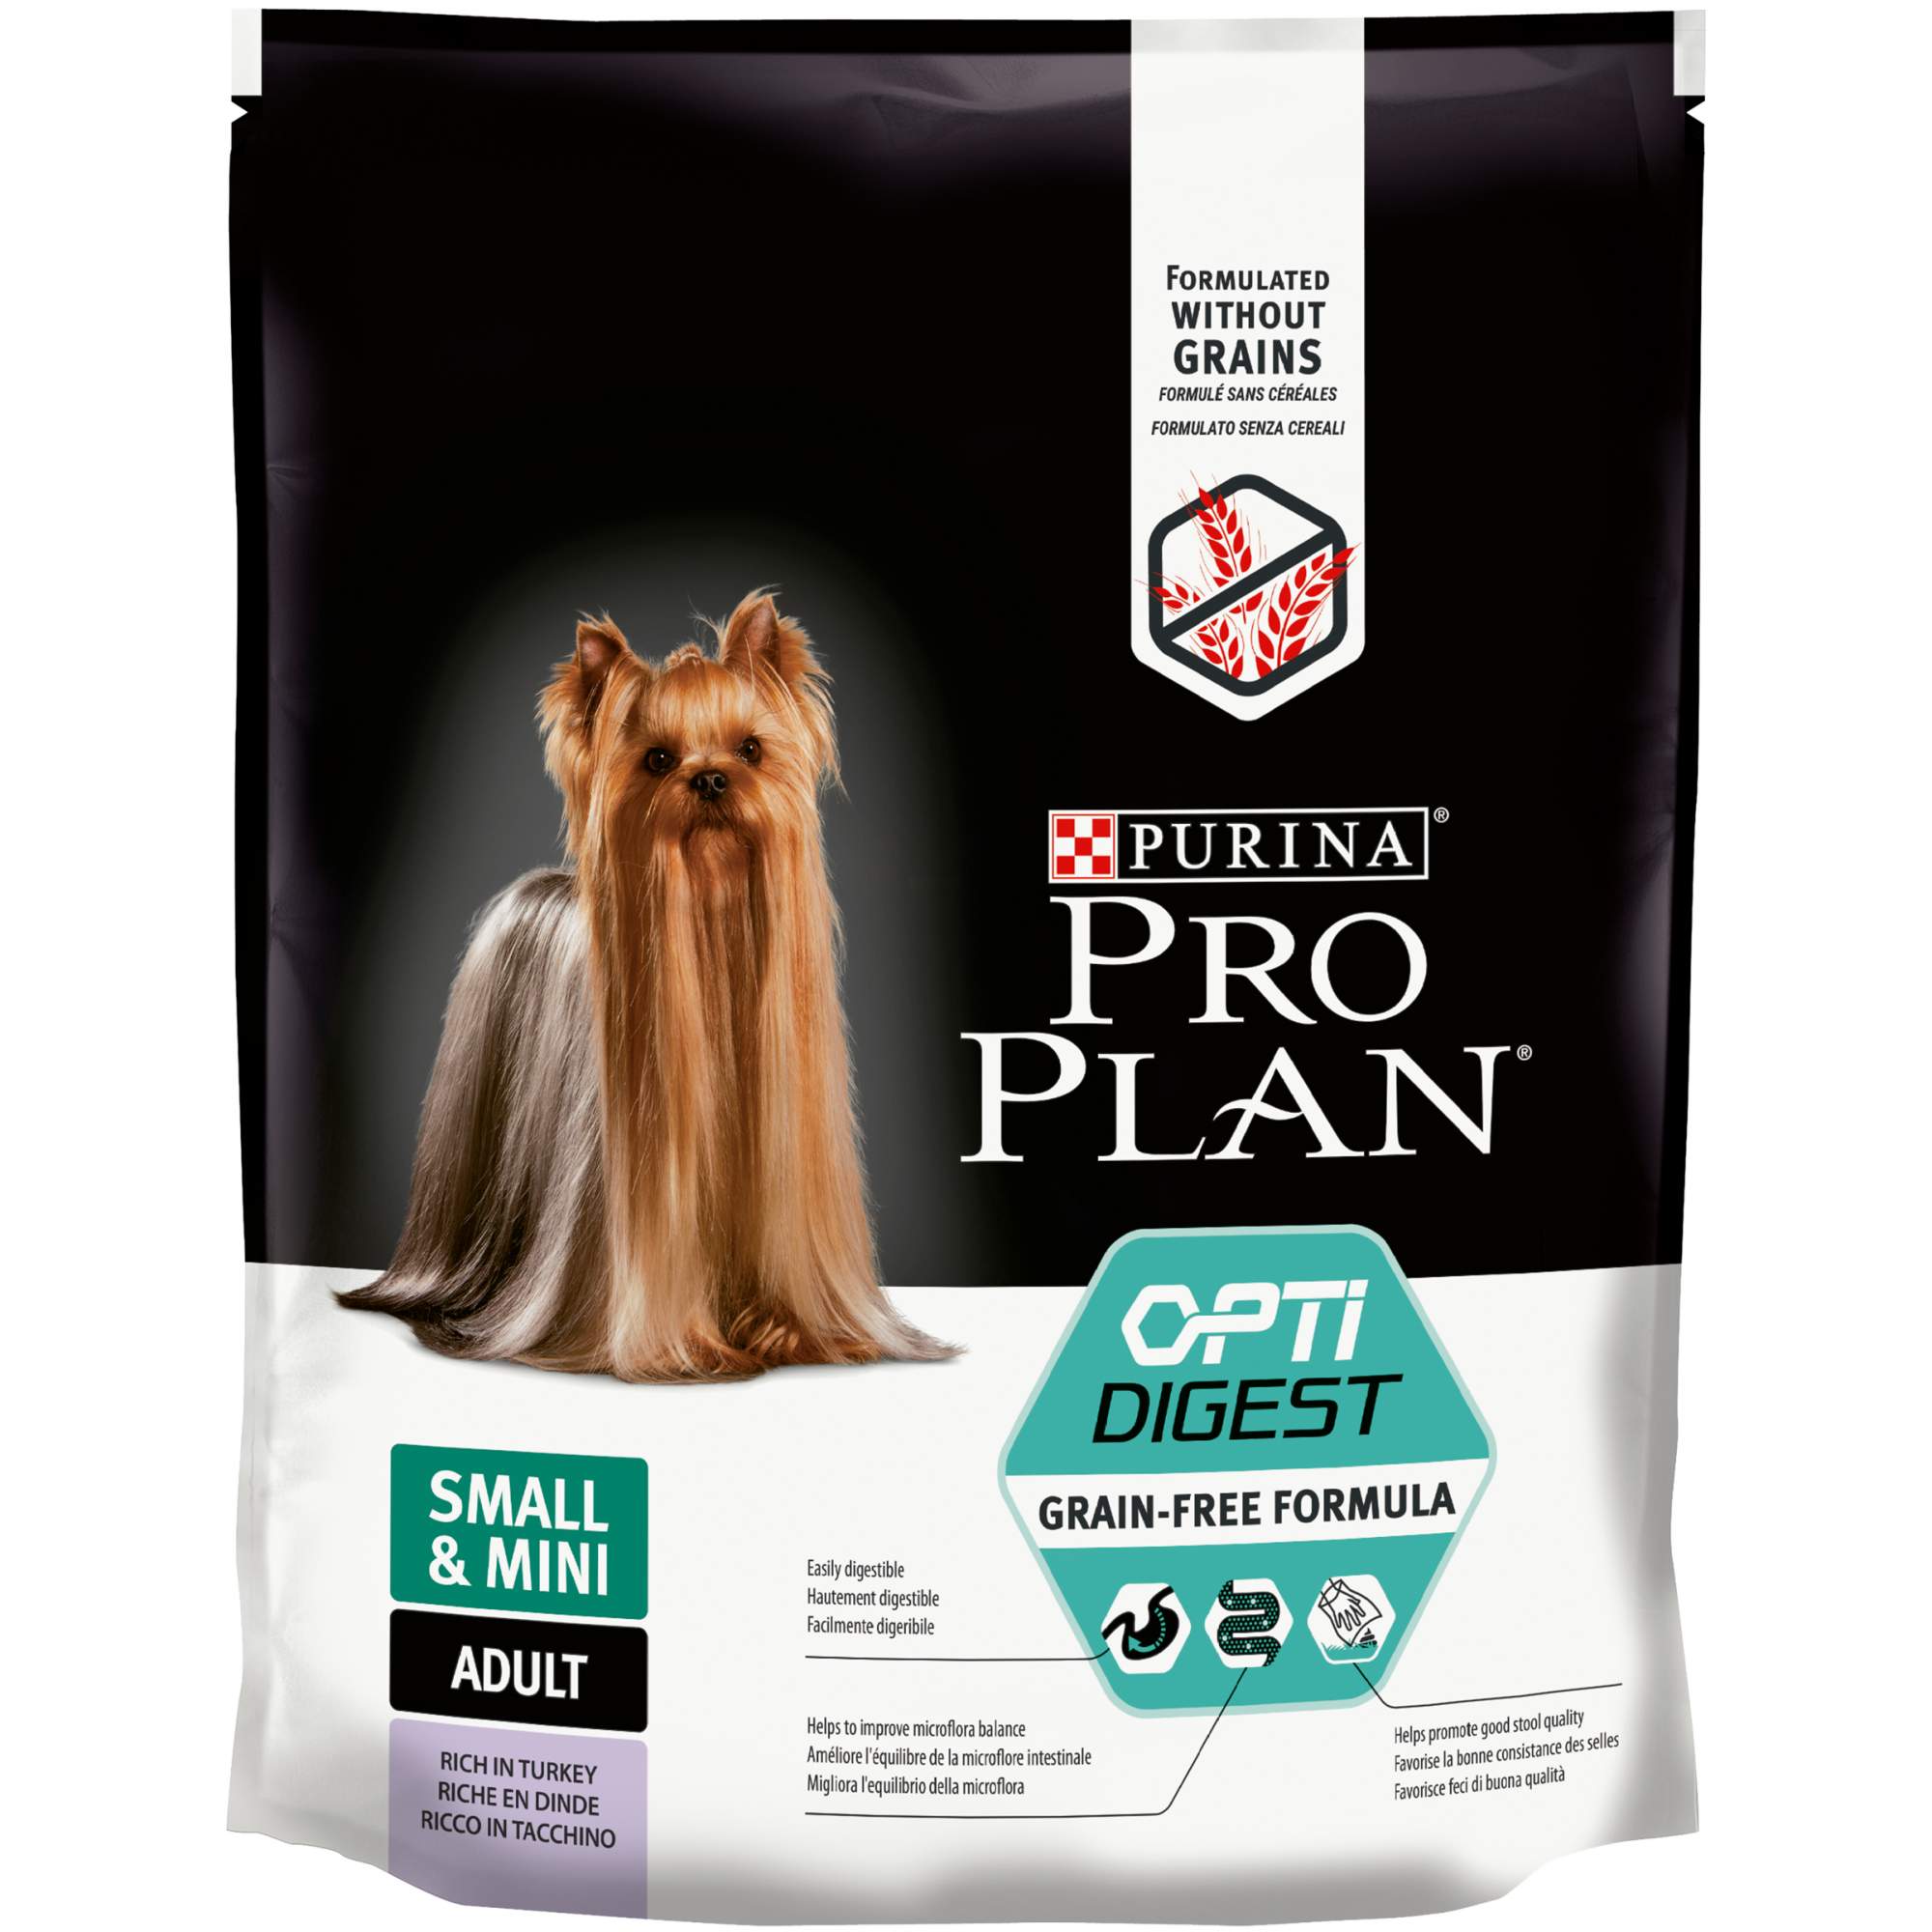 Сухой корм для собак PRO PLAN OptiDigest Small & Mini Adult Grain Free, индейка, 0,7кг